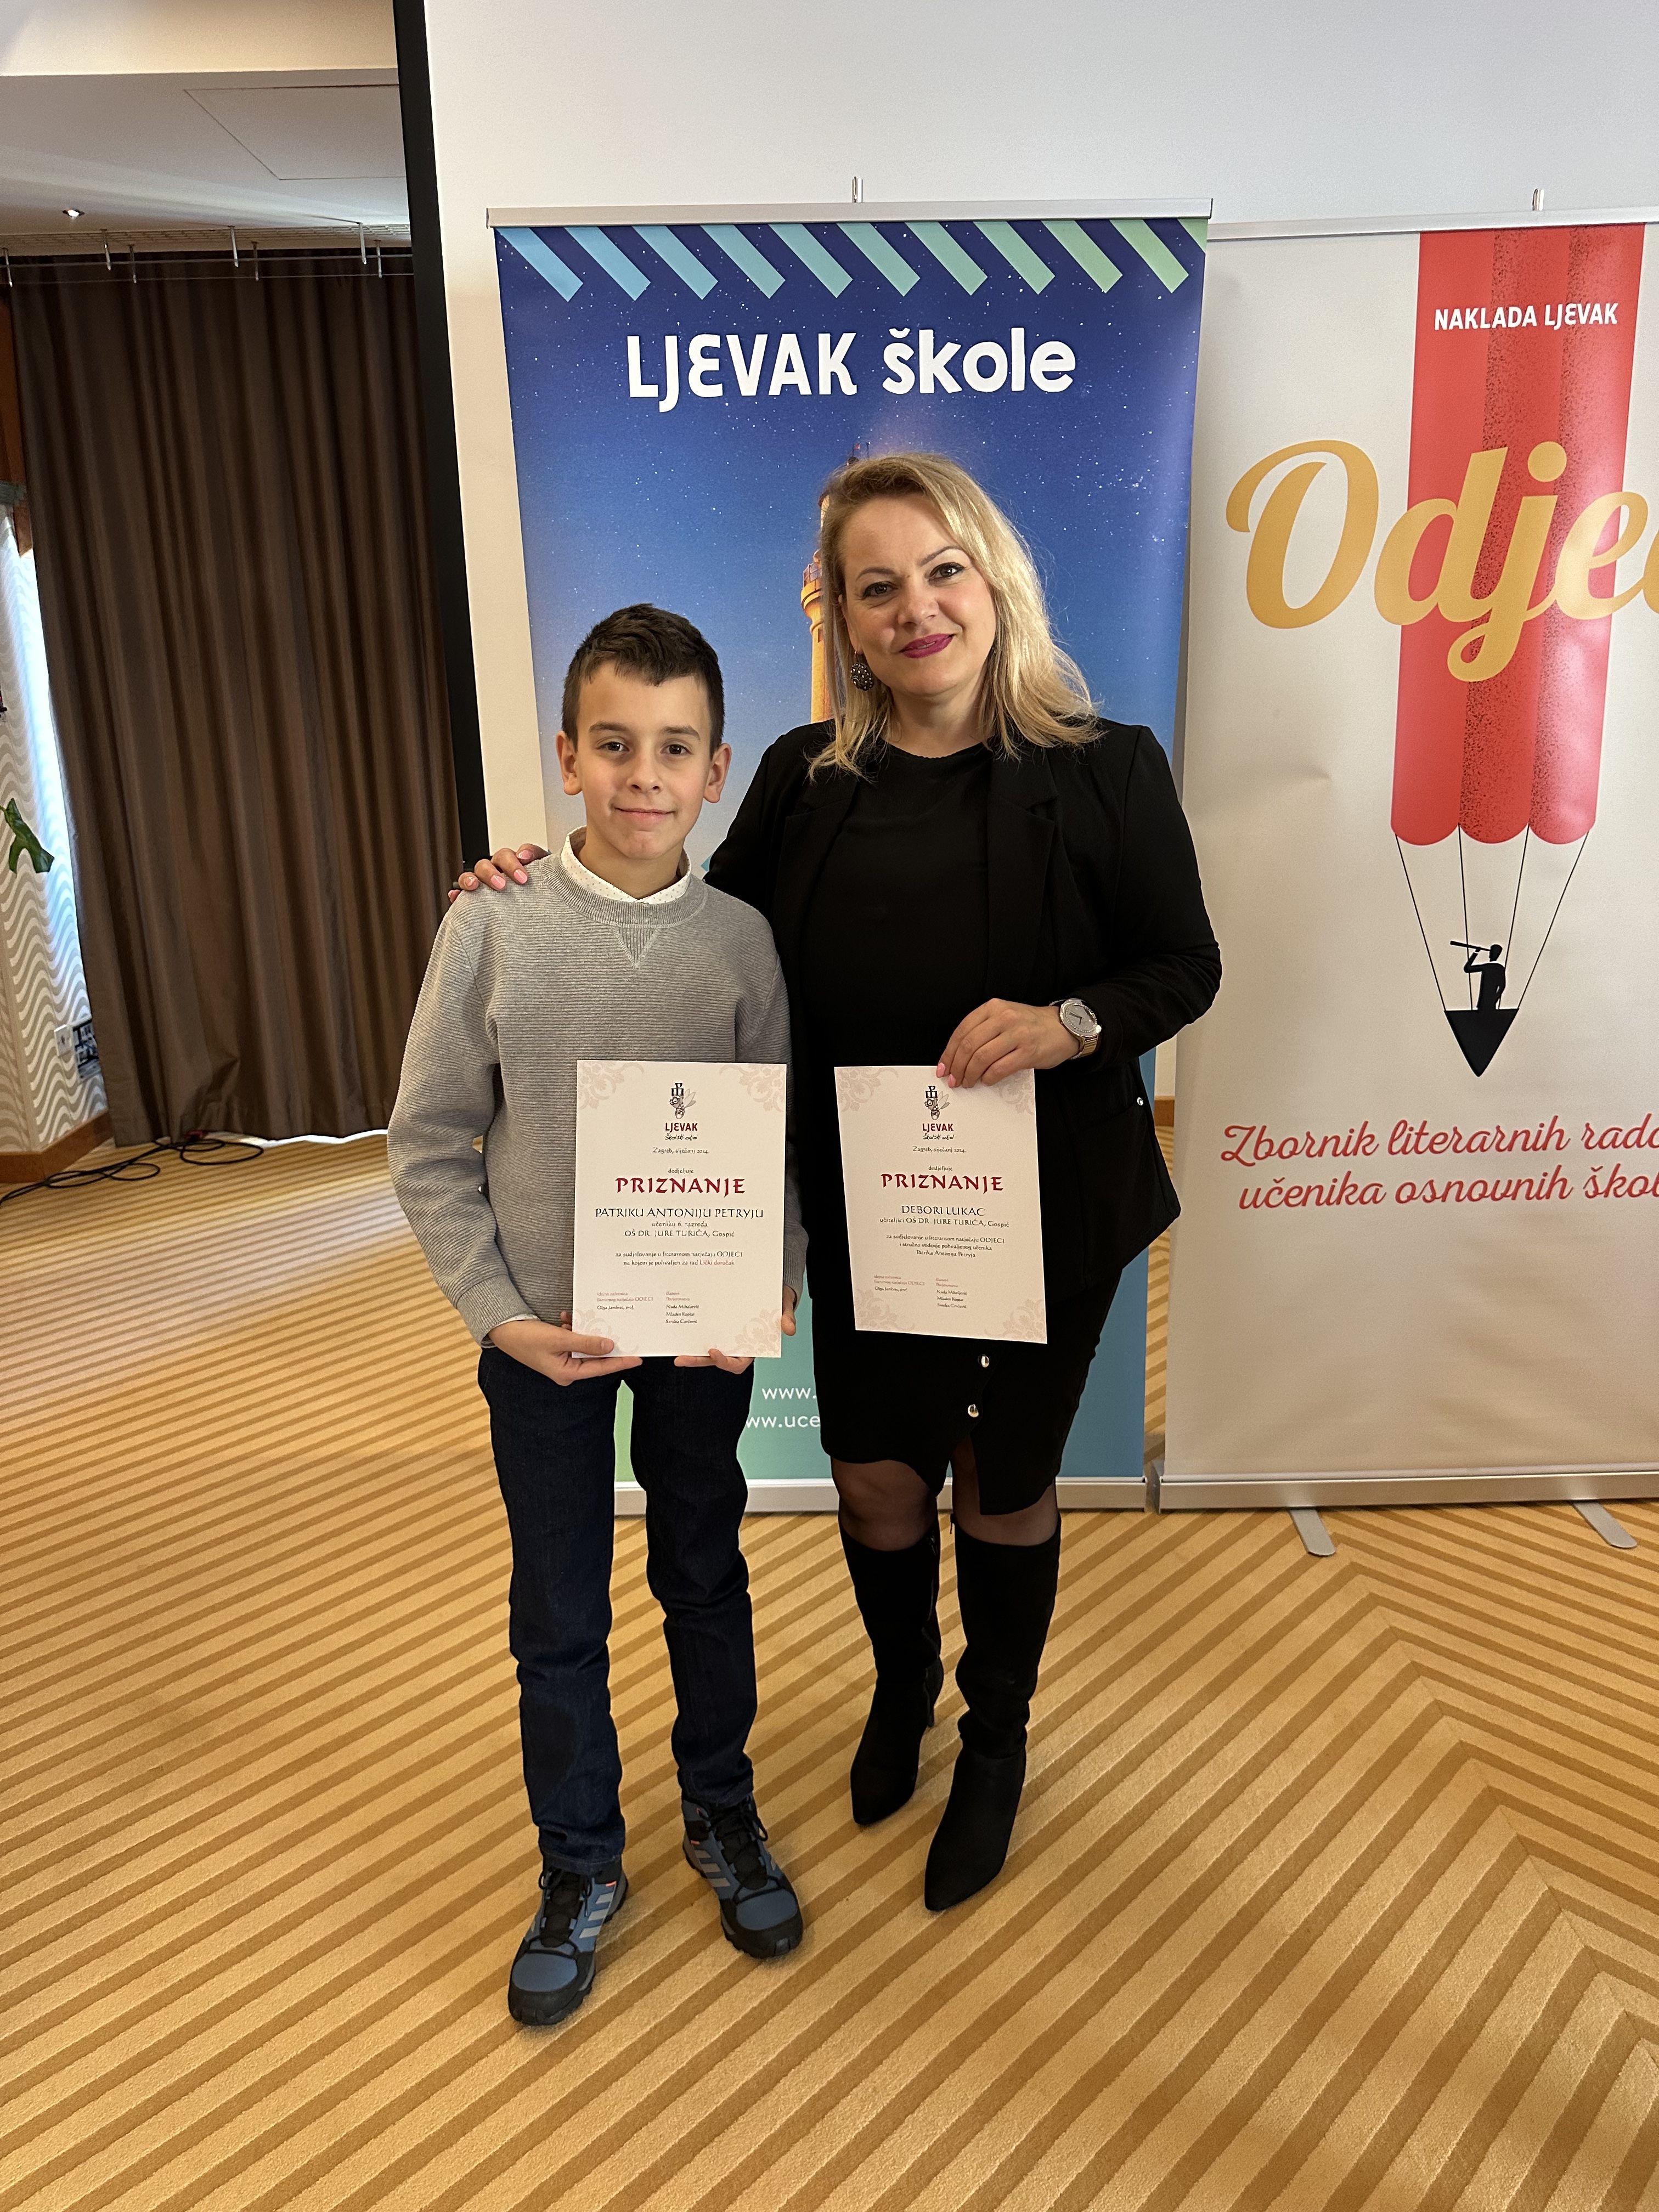 Literarna nagrada Odjeci uručena učeniku Patriku Antoniju Petryju